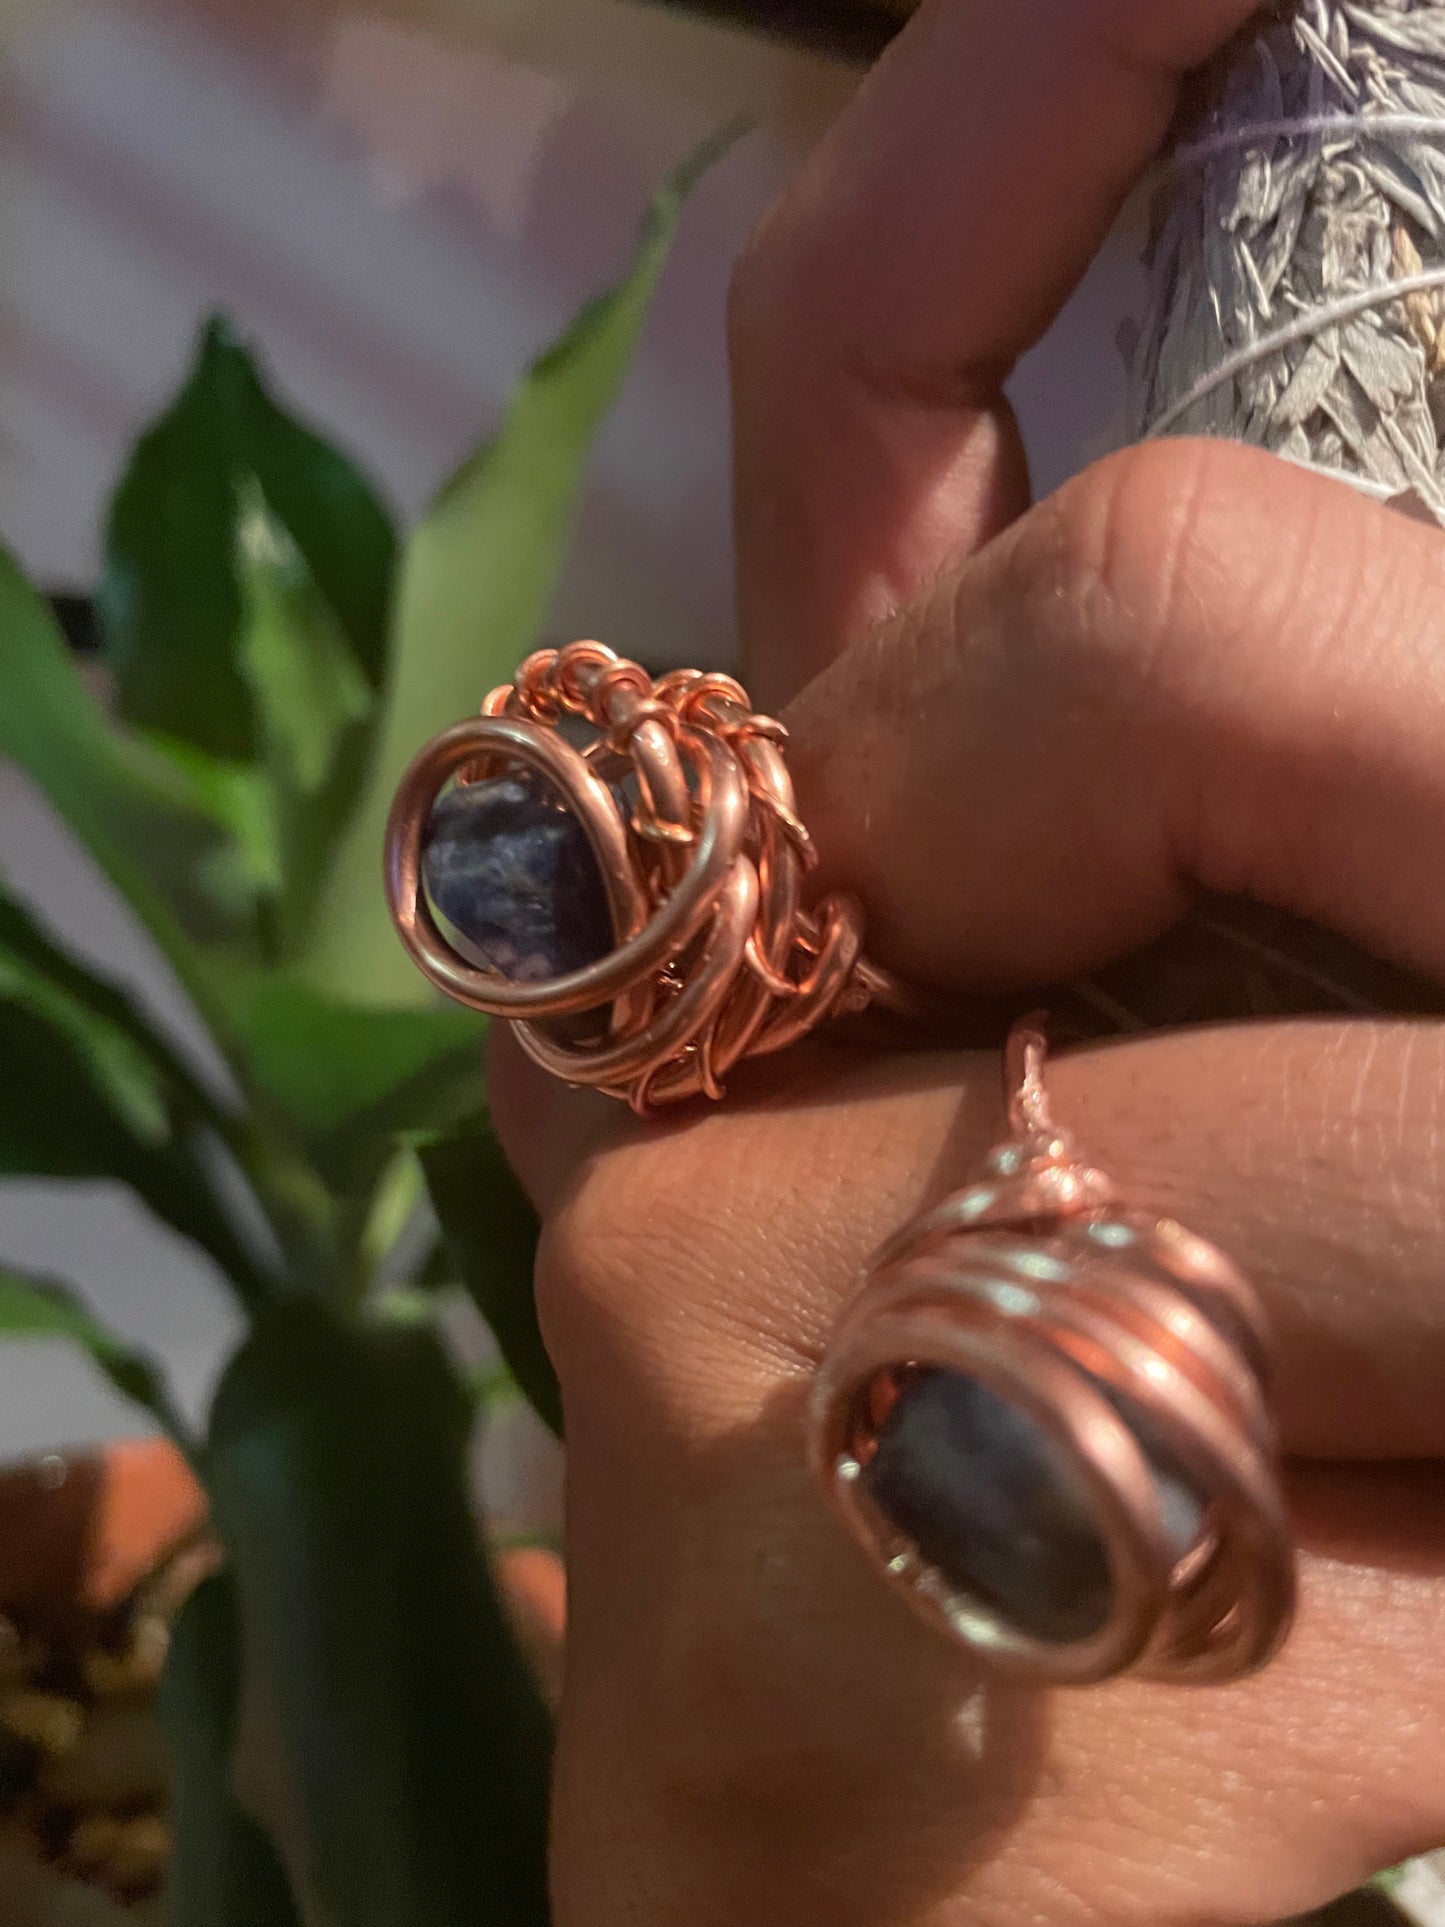 Sodalite Copper Ring